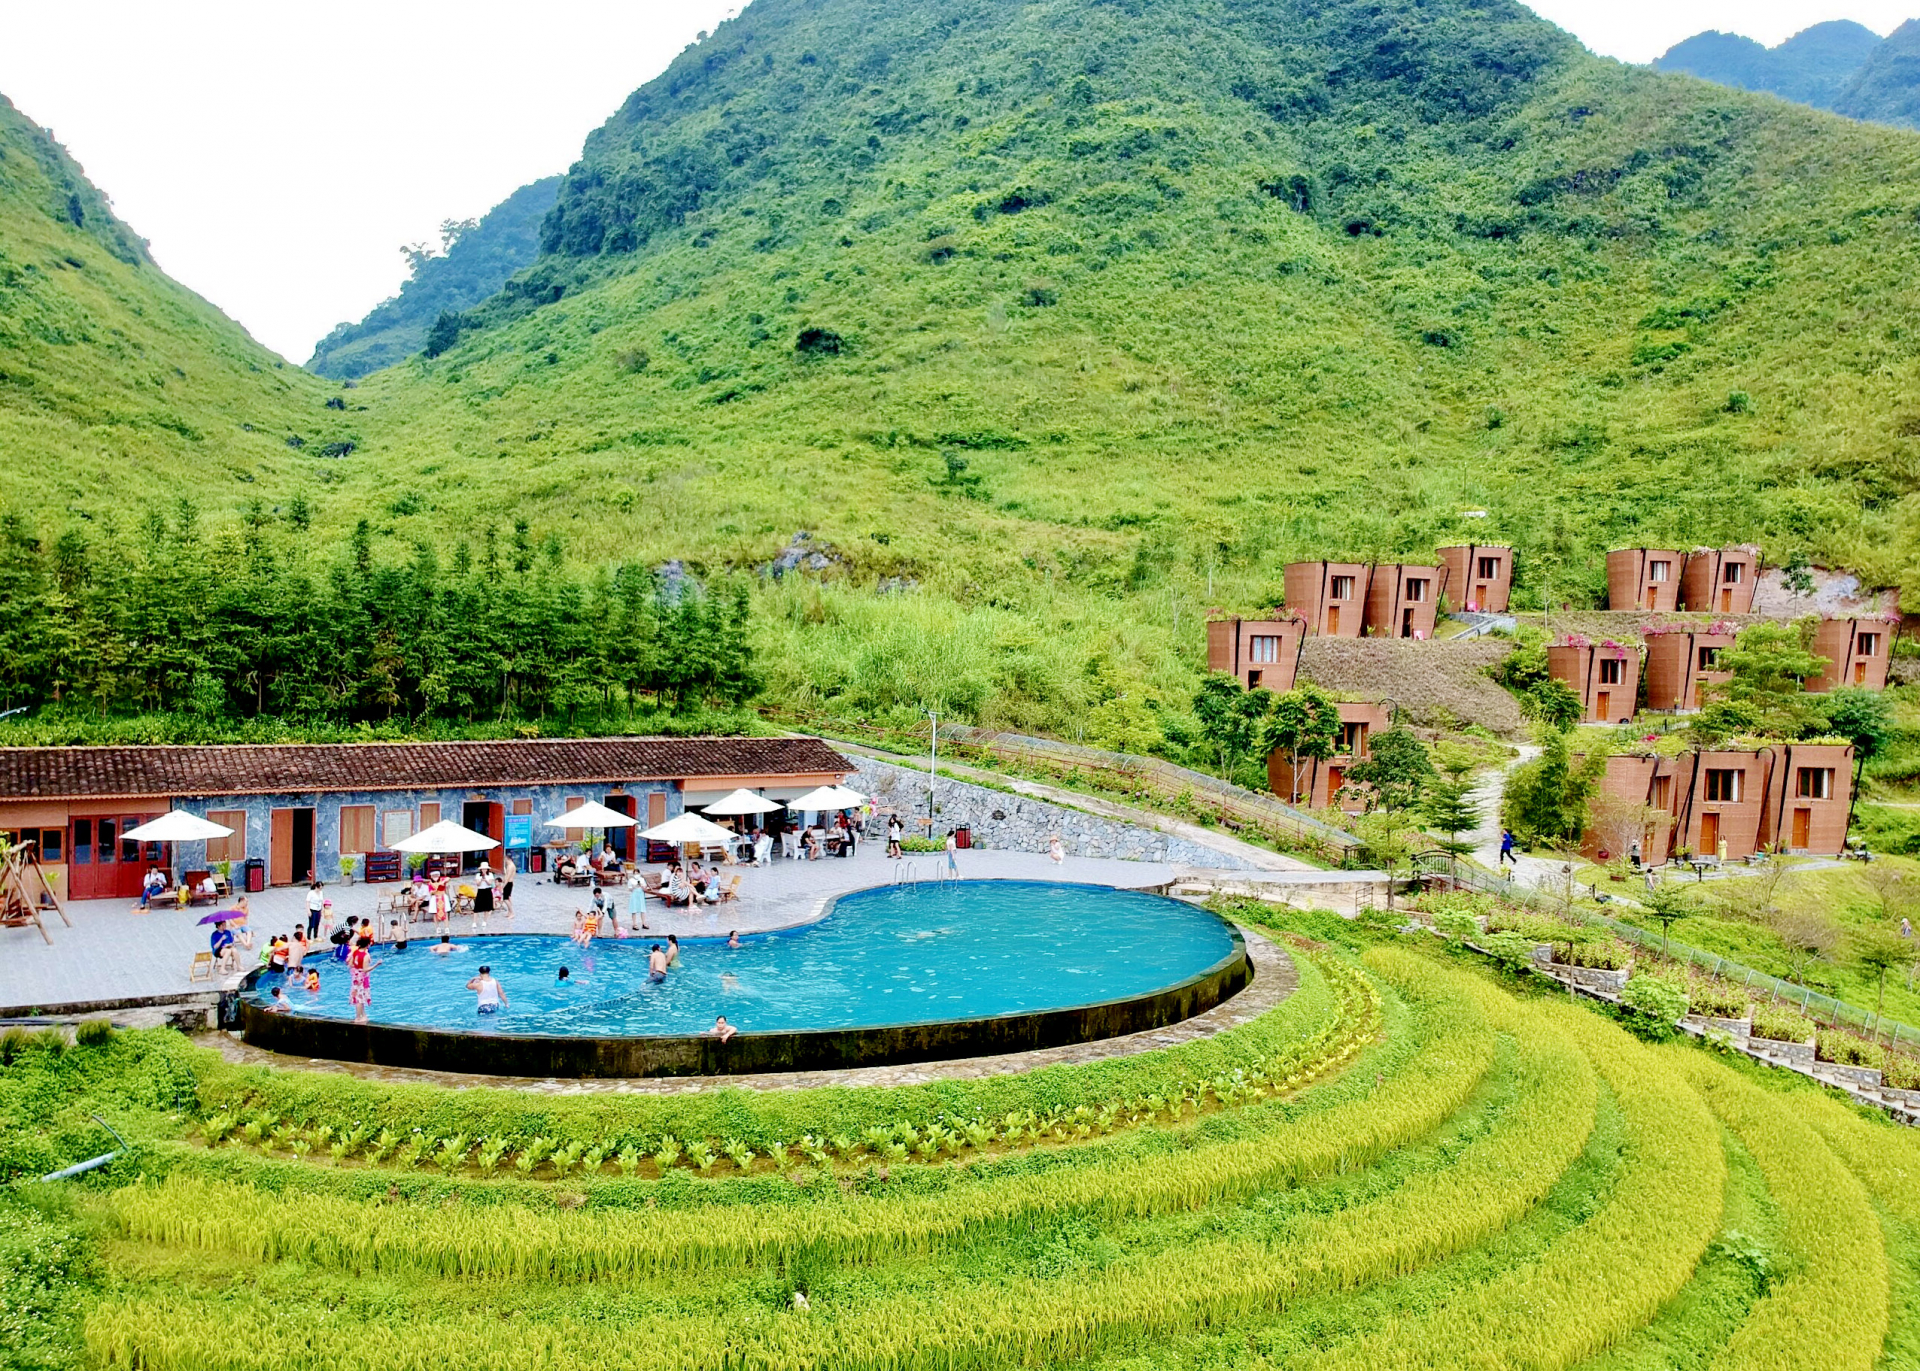 Khu du lịch nghỉ dưỡng cao cấp H’Mong Vilage (Quản Bạ) được trao giải thưởng Khách sạn xanh ASEAN 2022.